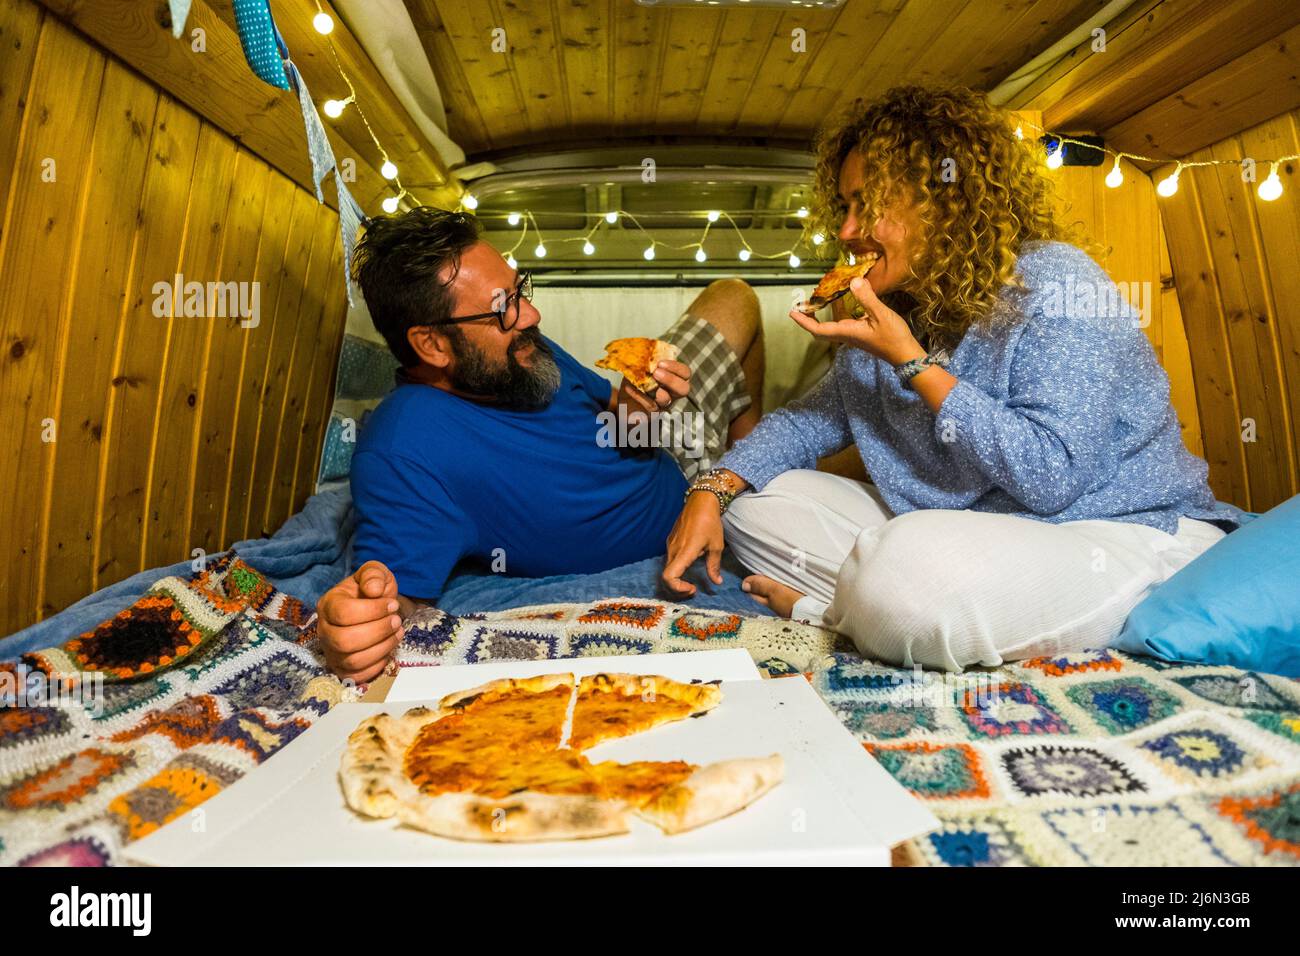 Pärchen haben Spaß beim Essen von Pizza in einem handgefertigten Oldtimer-Kleinbus in einem alternativen Lebensstil und Reiseurlaub - glückliche, romantische Menschen genießen es Stockfoto